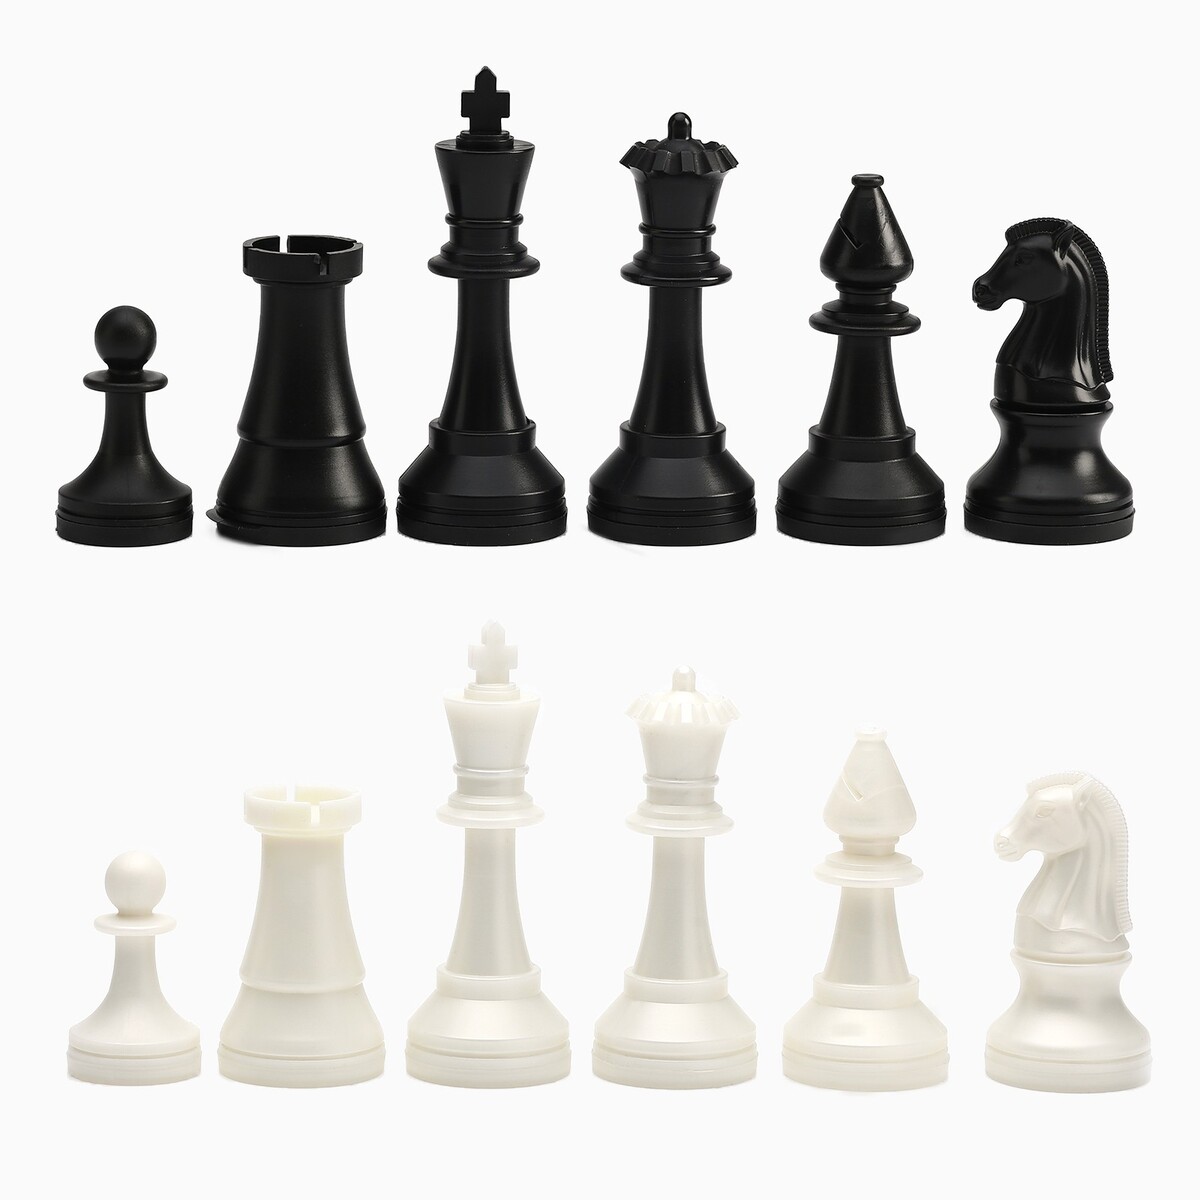 Шахматные фигуры турнирные, пластик, король h-10.5 см, пешка h-5 см шахматные лекции